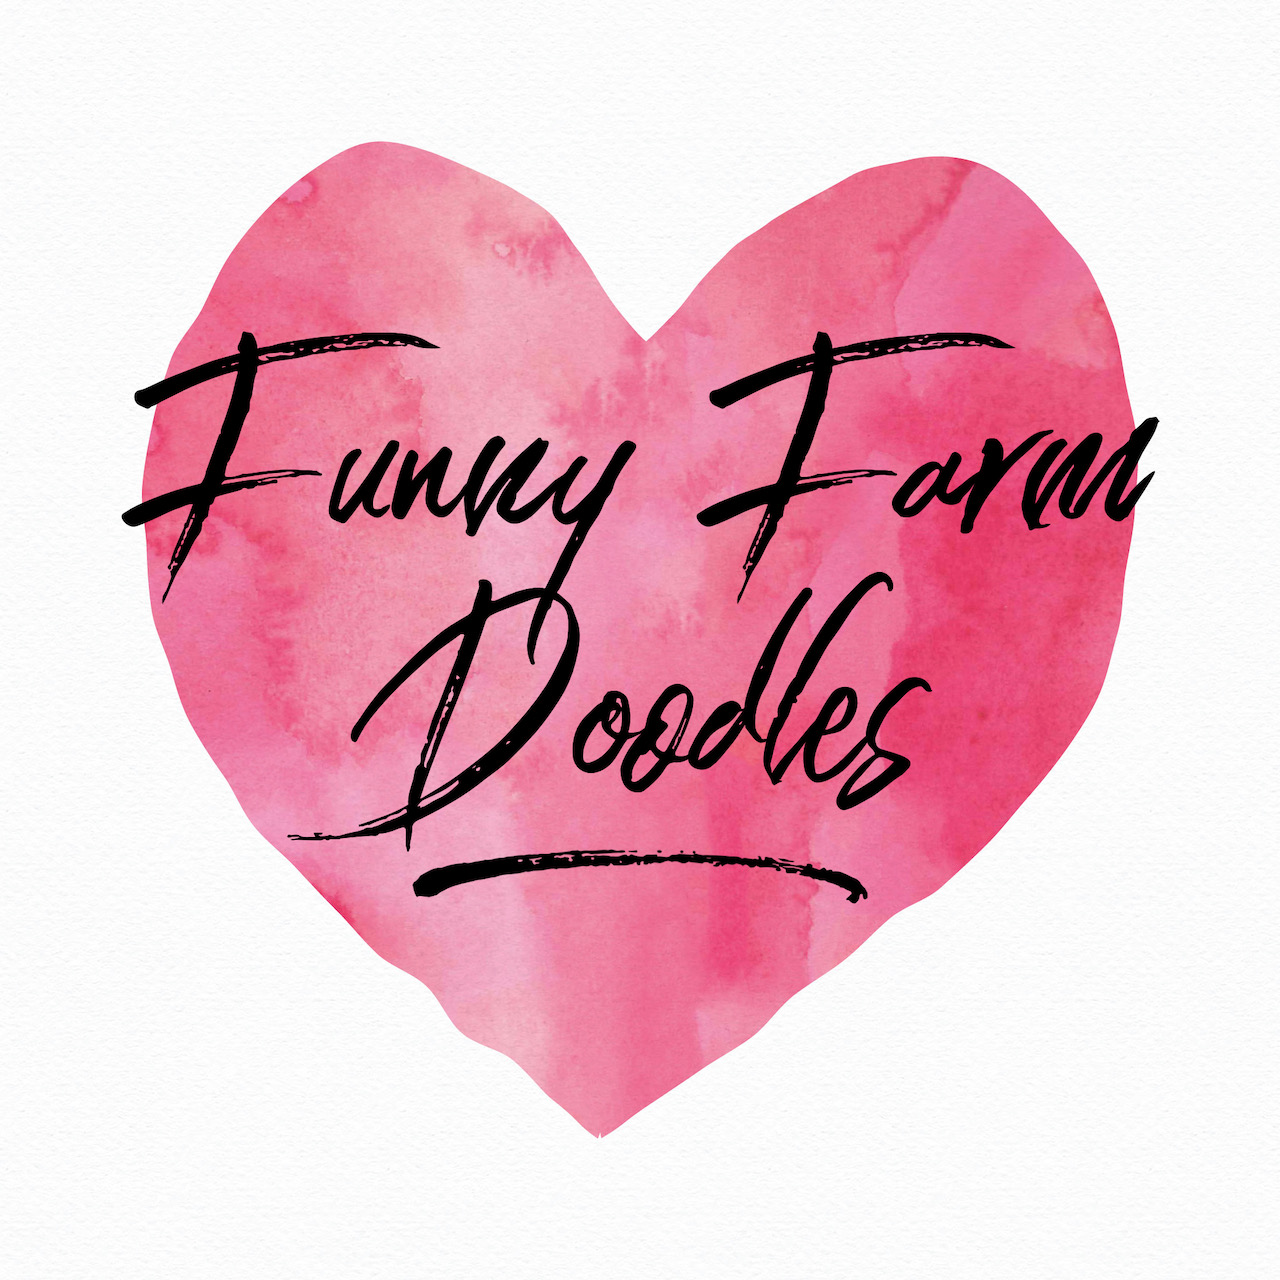 Funny Farm Poodles & Doodles